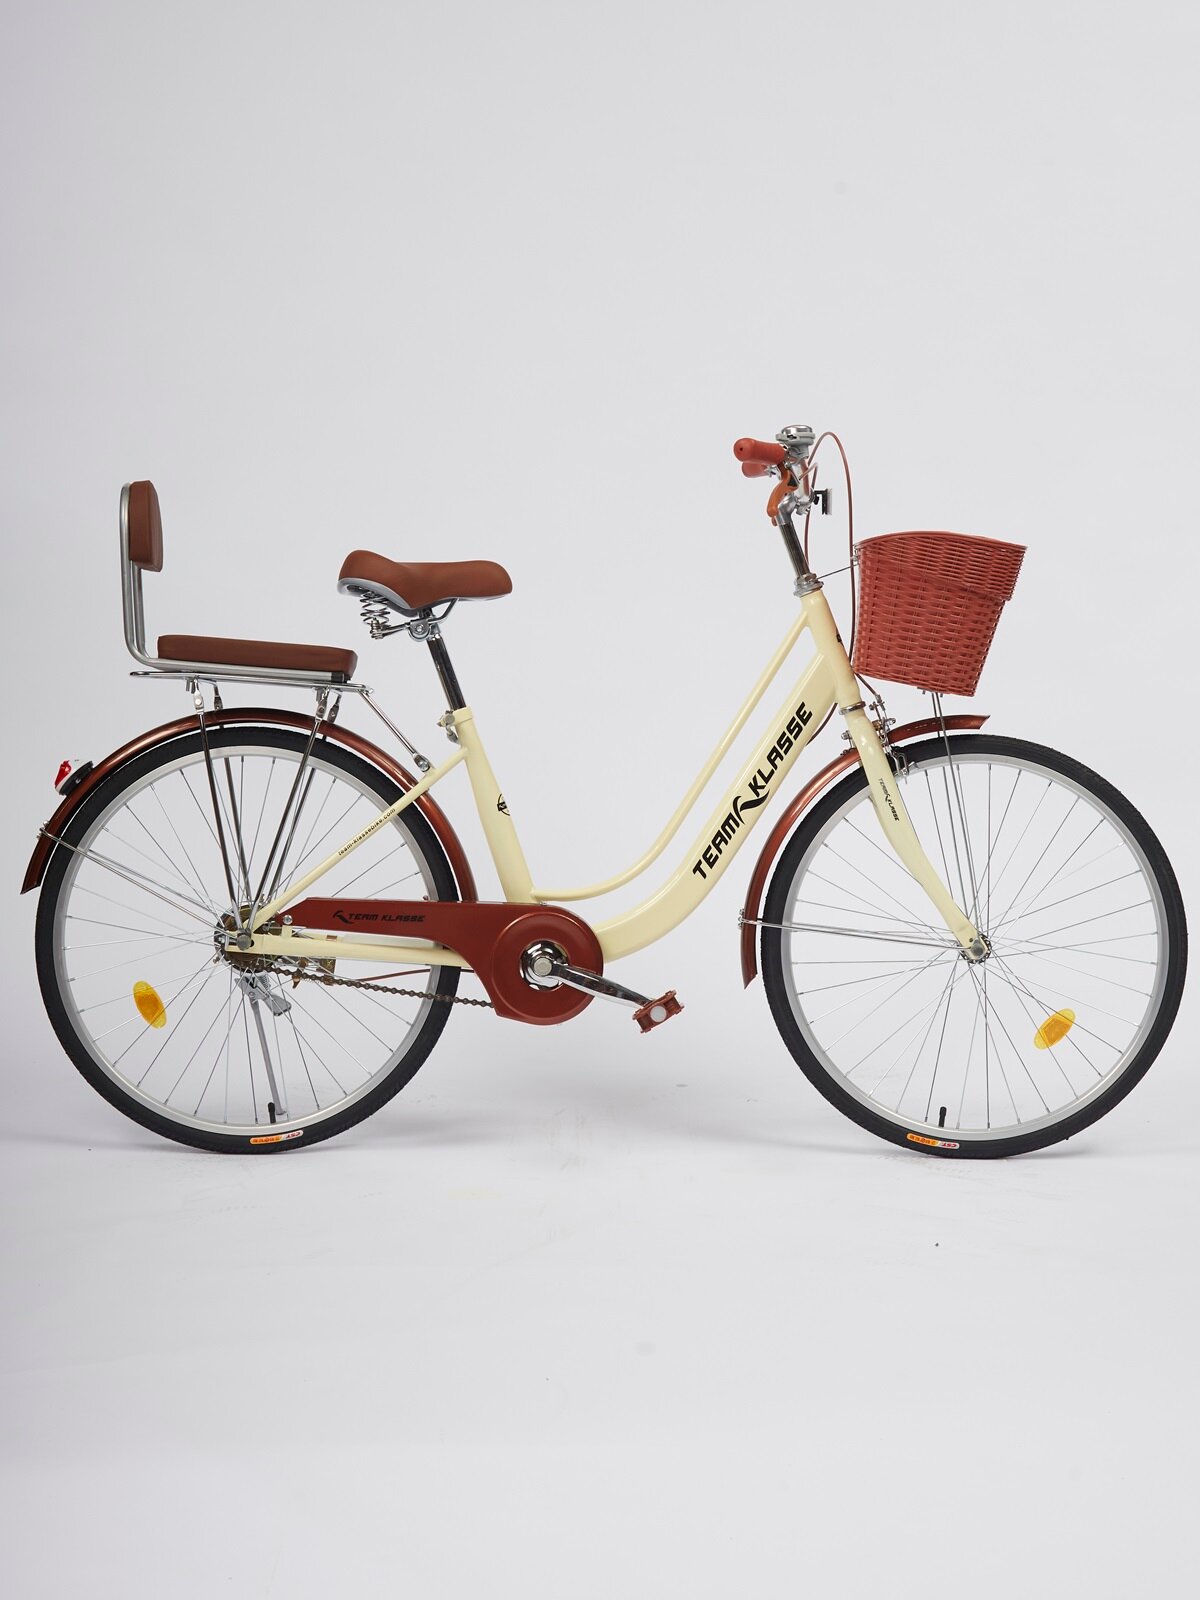 Прогулочный велосипед Team Klasse E-1-D, кремовый желтый, диаметр колес 24 дюймов